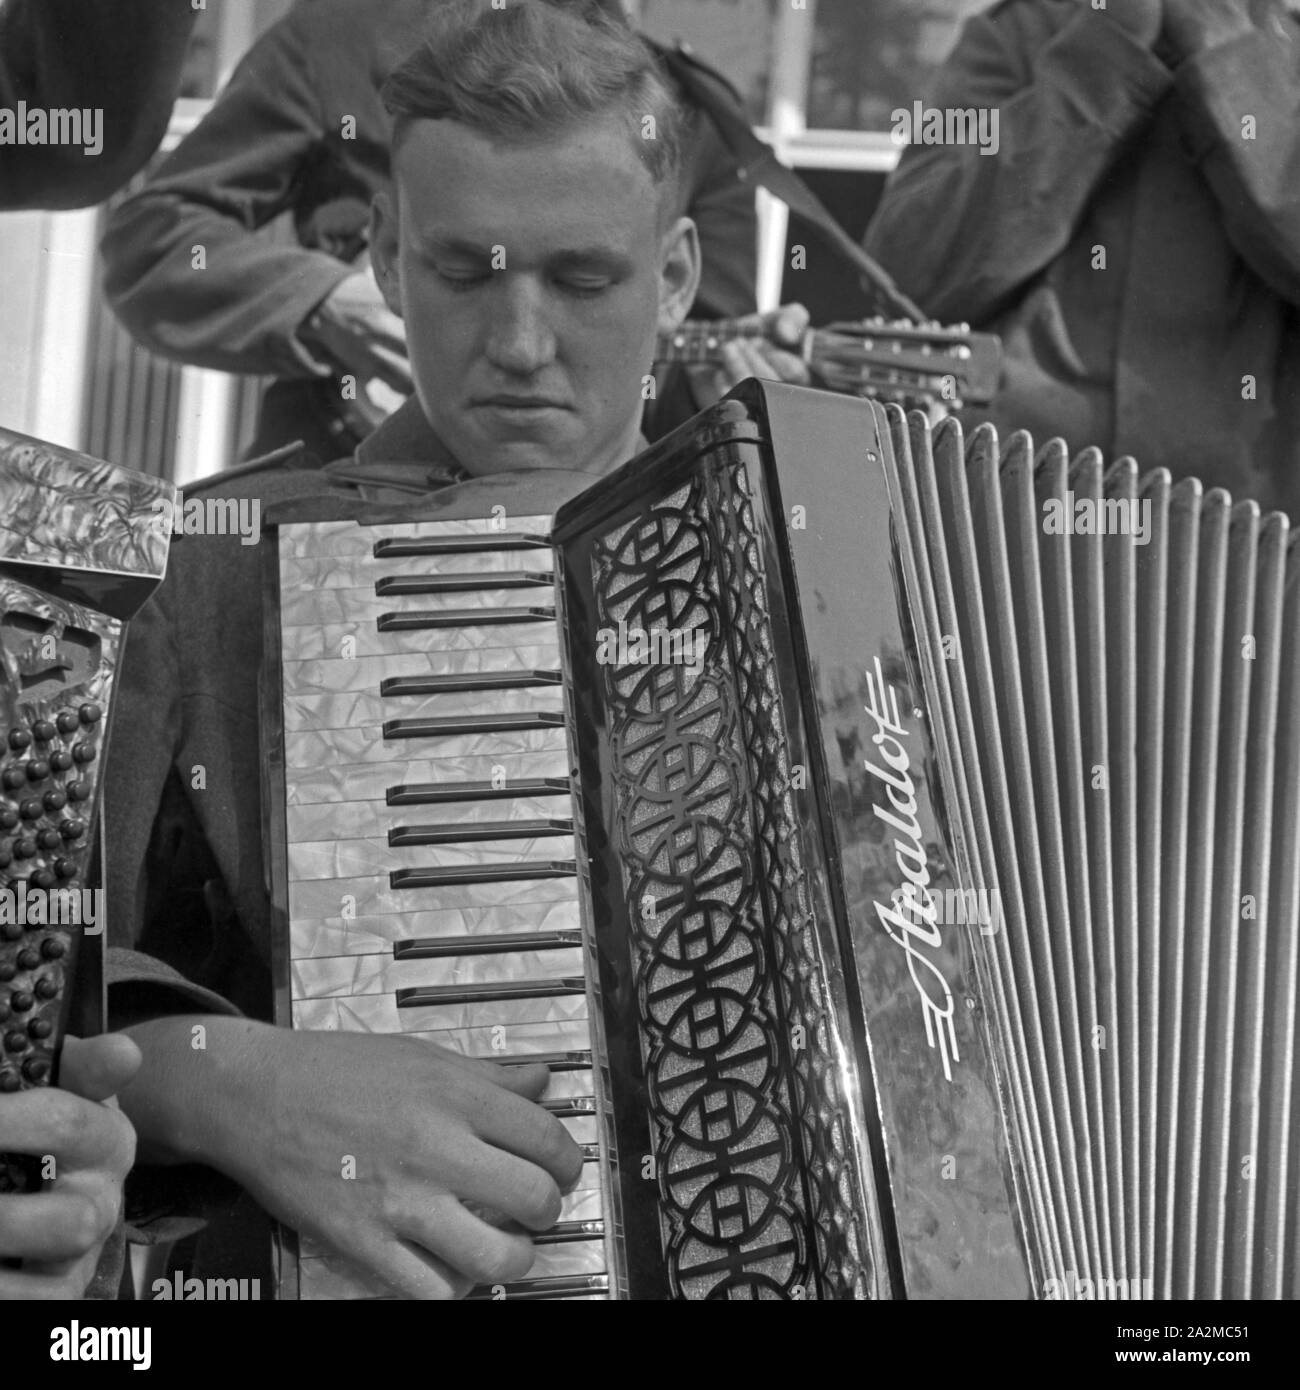 Original-Bildunterschrift: Soldat der Horst-Kapelle mit seinem Akkordeon, Deutschland 1940er Jahre. Soldier of the Horst combo with his accordion, Germany 1940s. Stock Photo